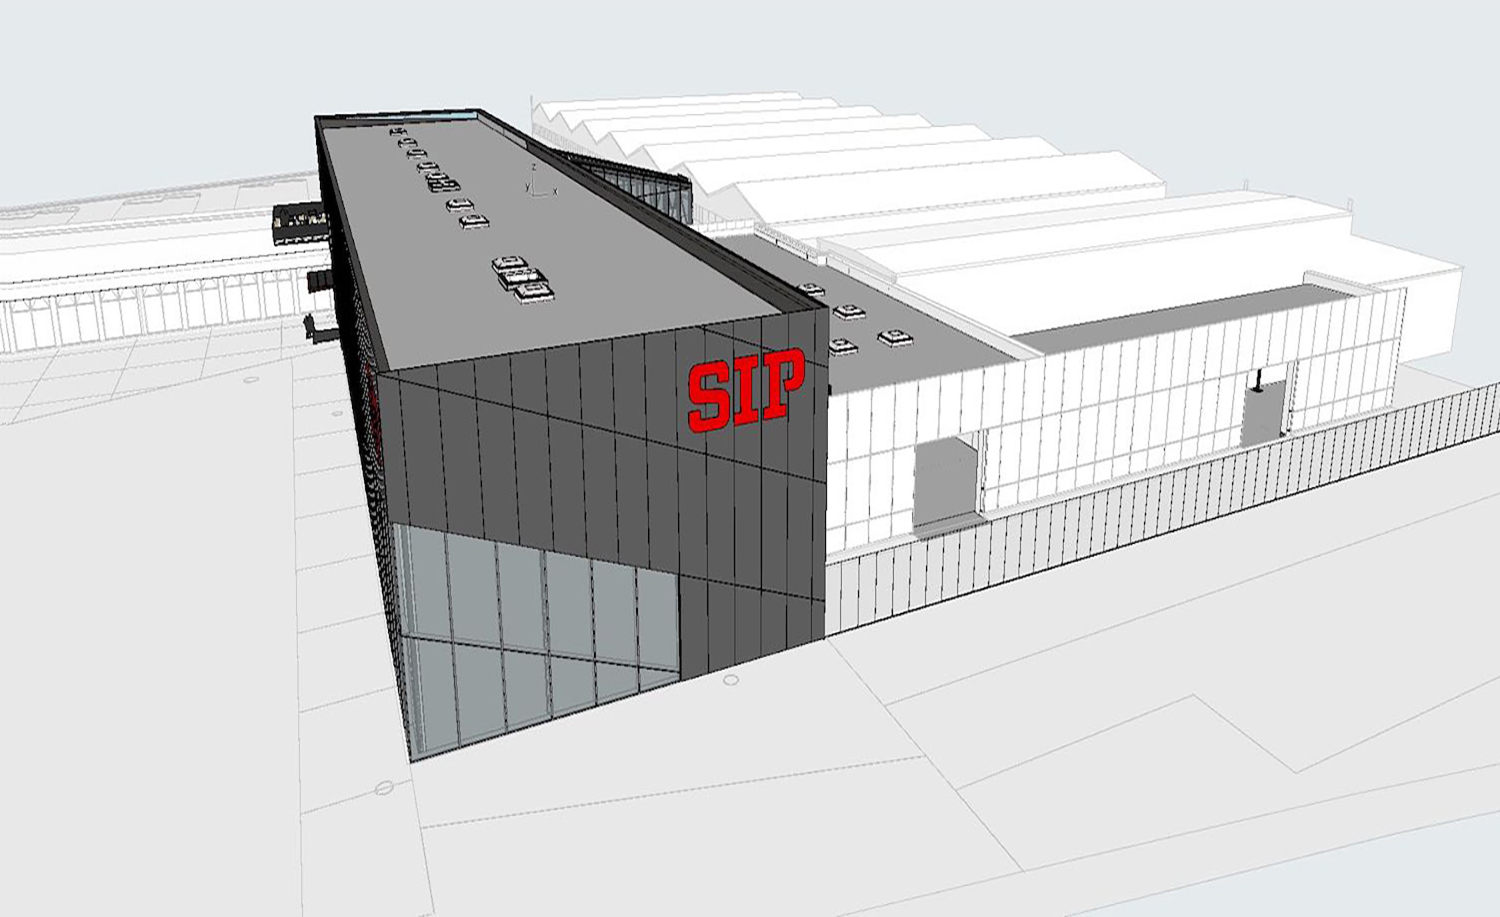 Finalizacija stavbe-SIP experience center